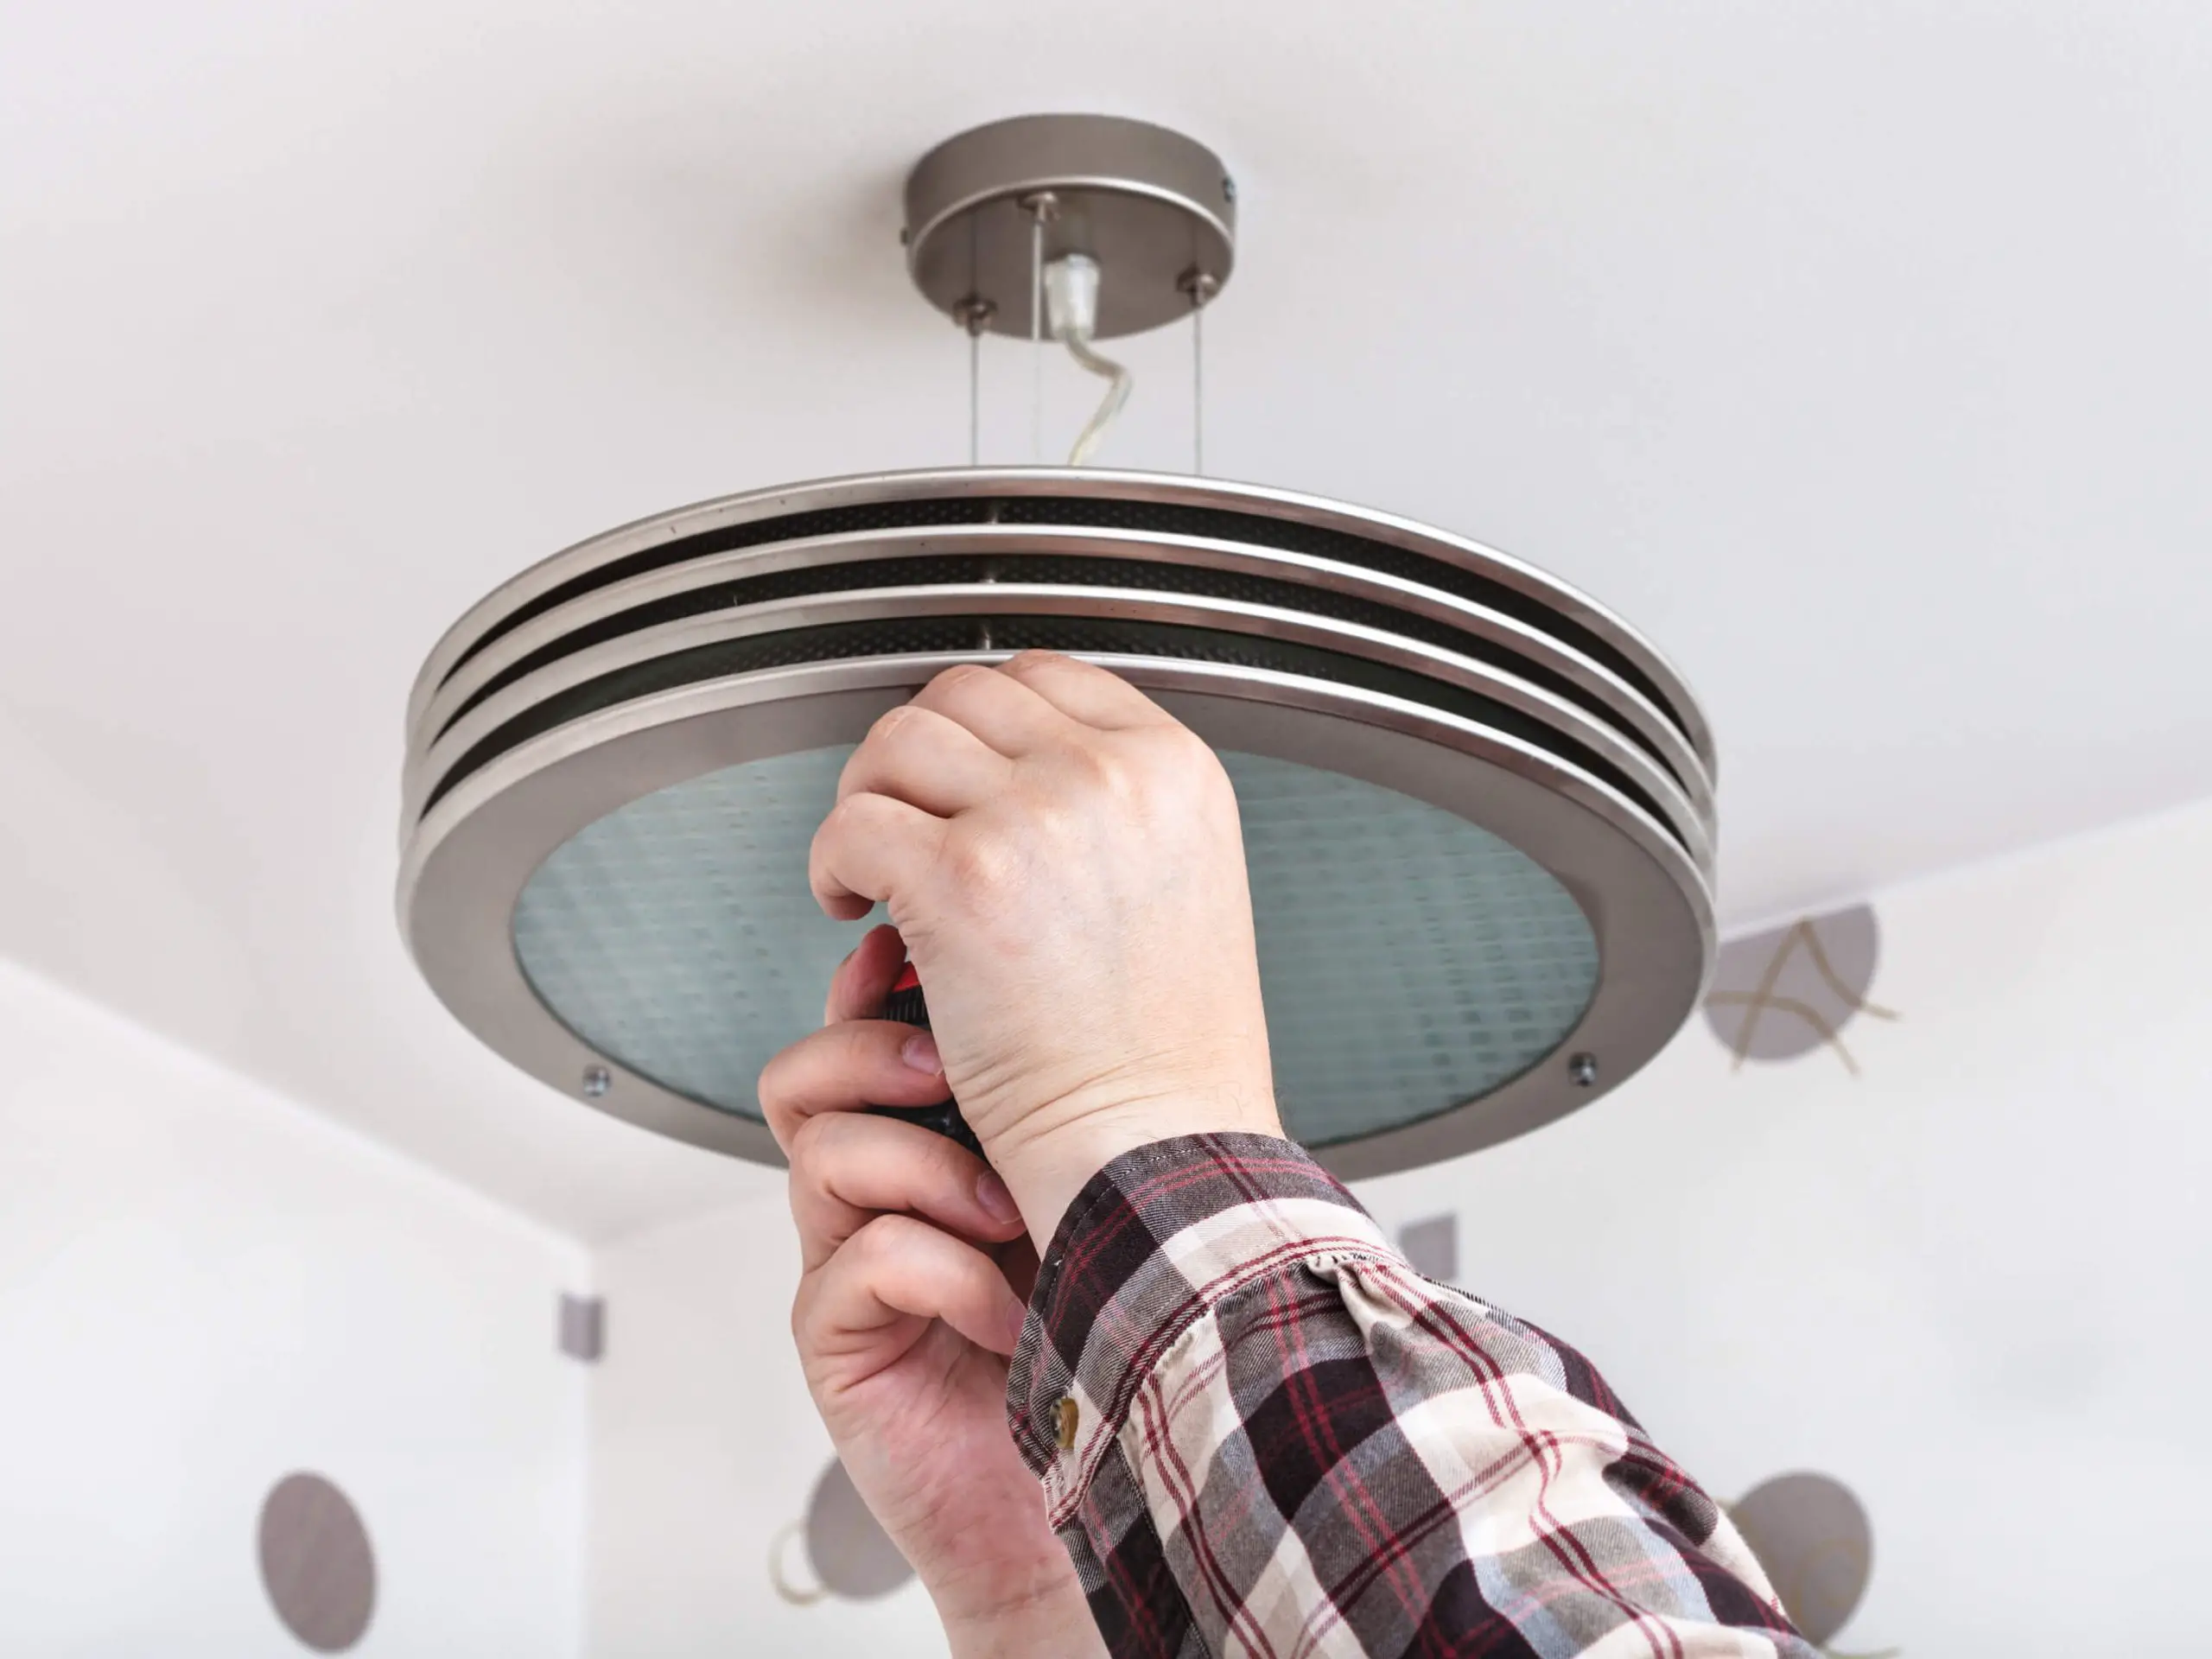 Lamp ophangen zonder boren aan het plafond (5 methoden en alternatieven)